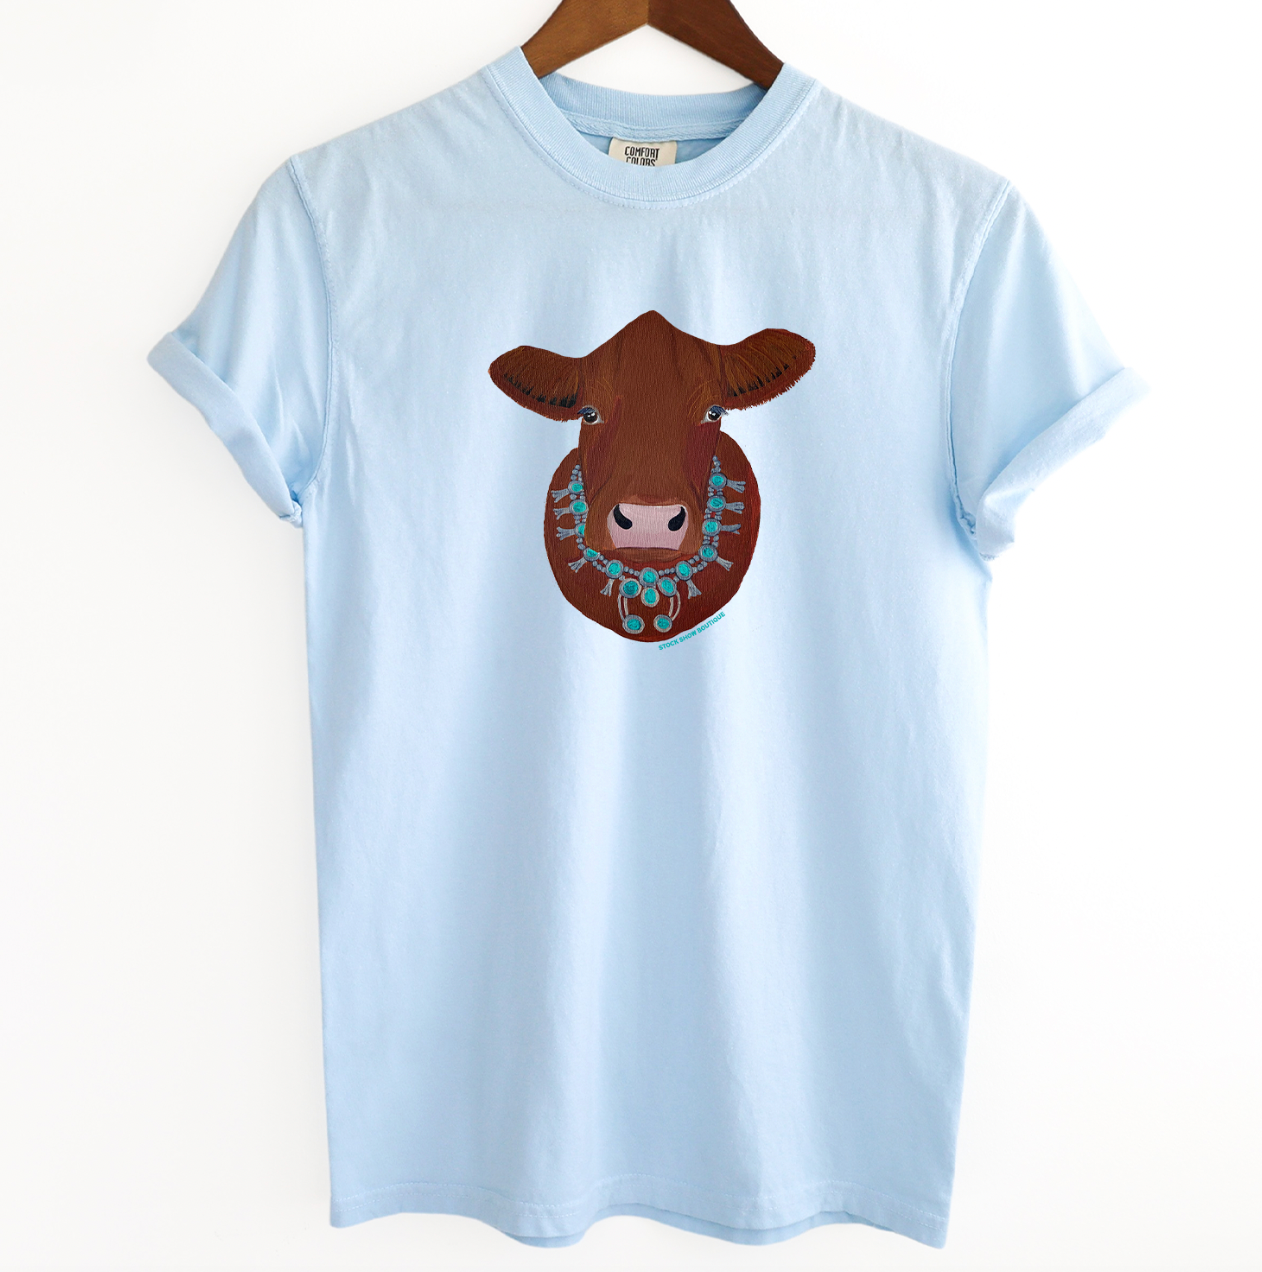 Red Cow Squash ComfortWash/ComfortColor T-Shirt (S-4XL) - Multiple Colors!